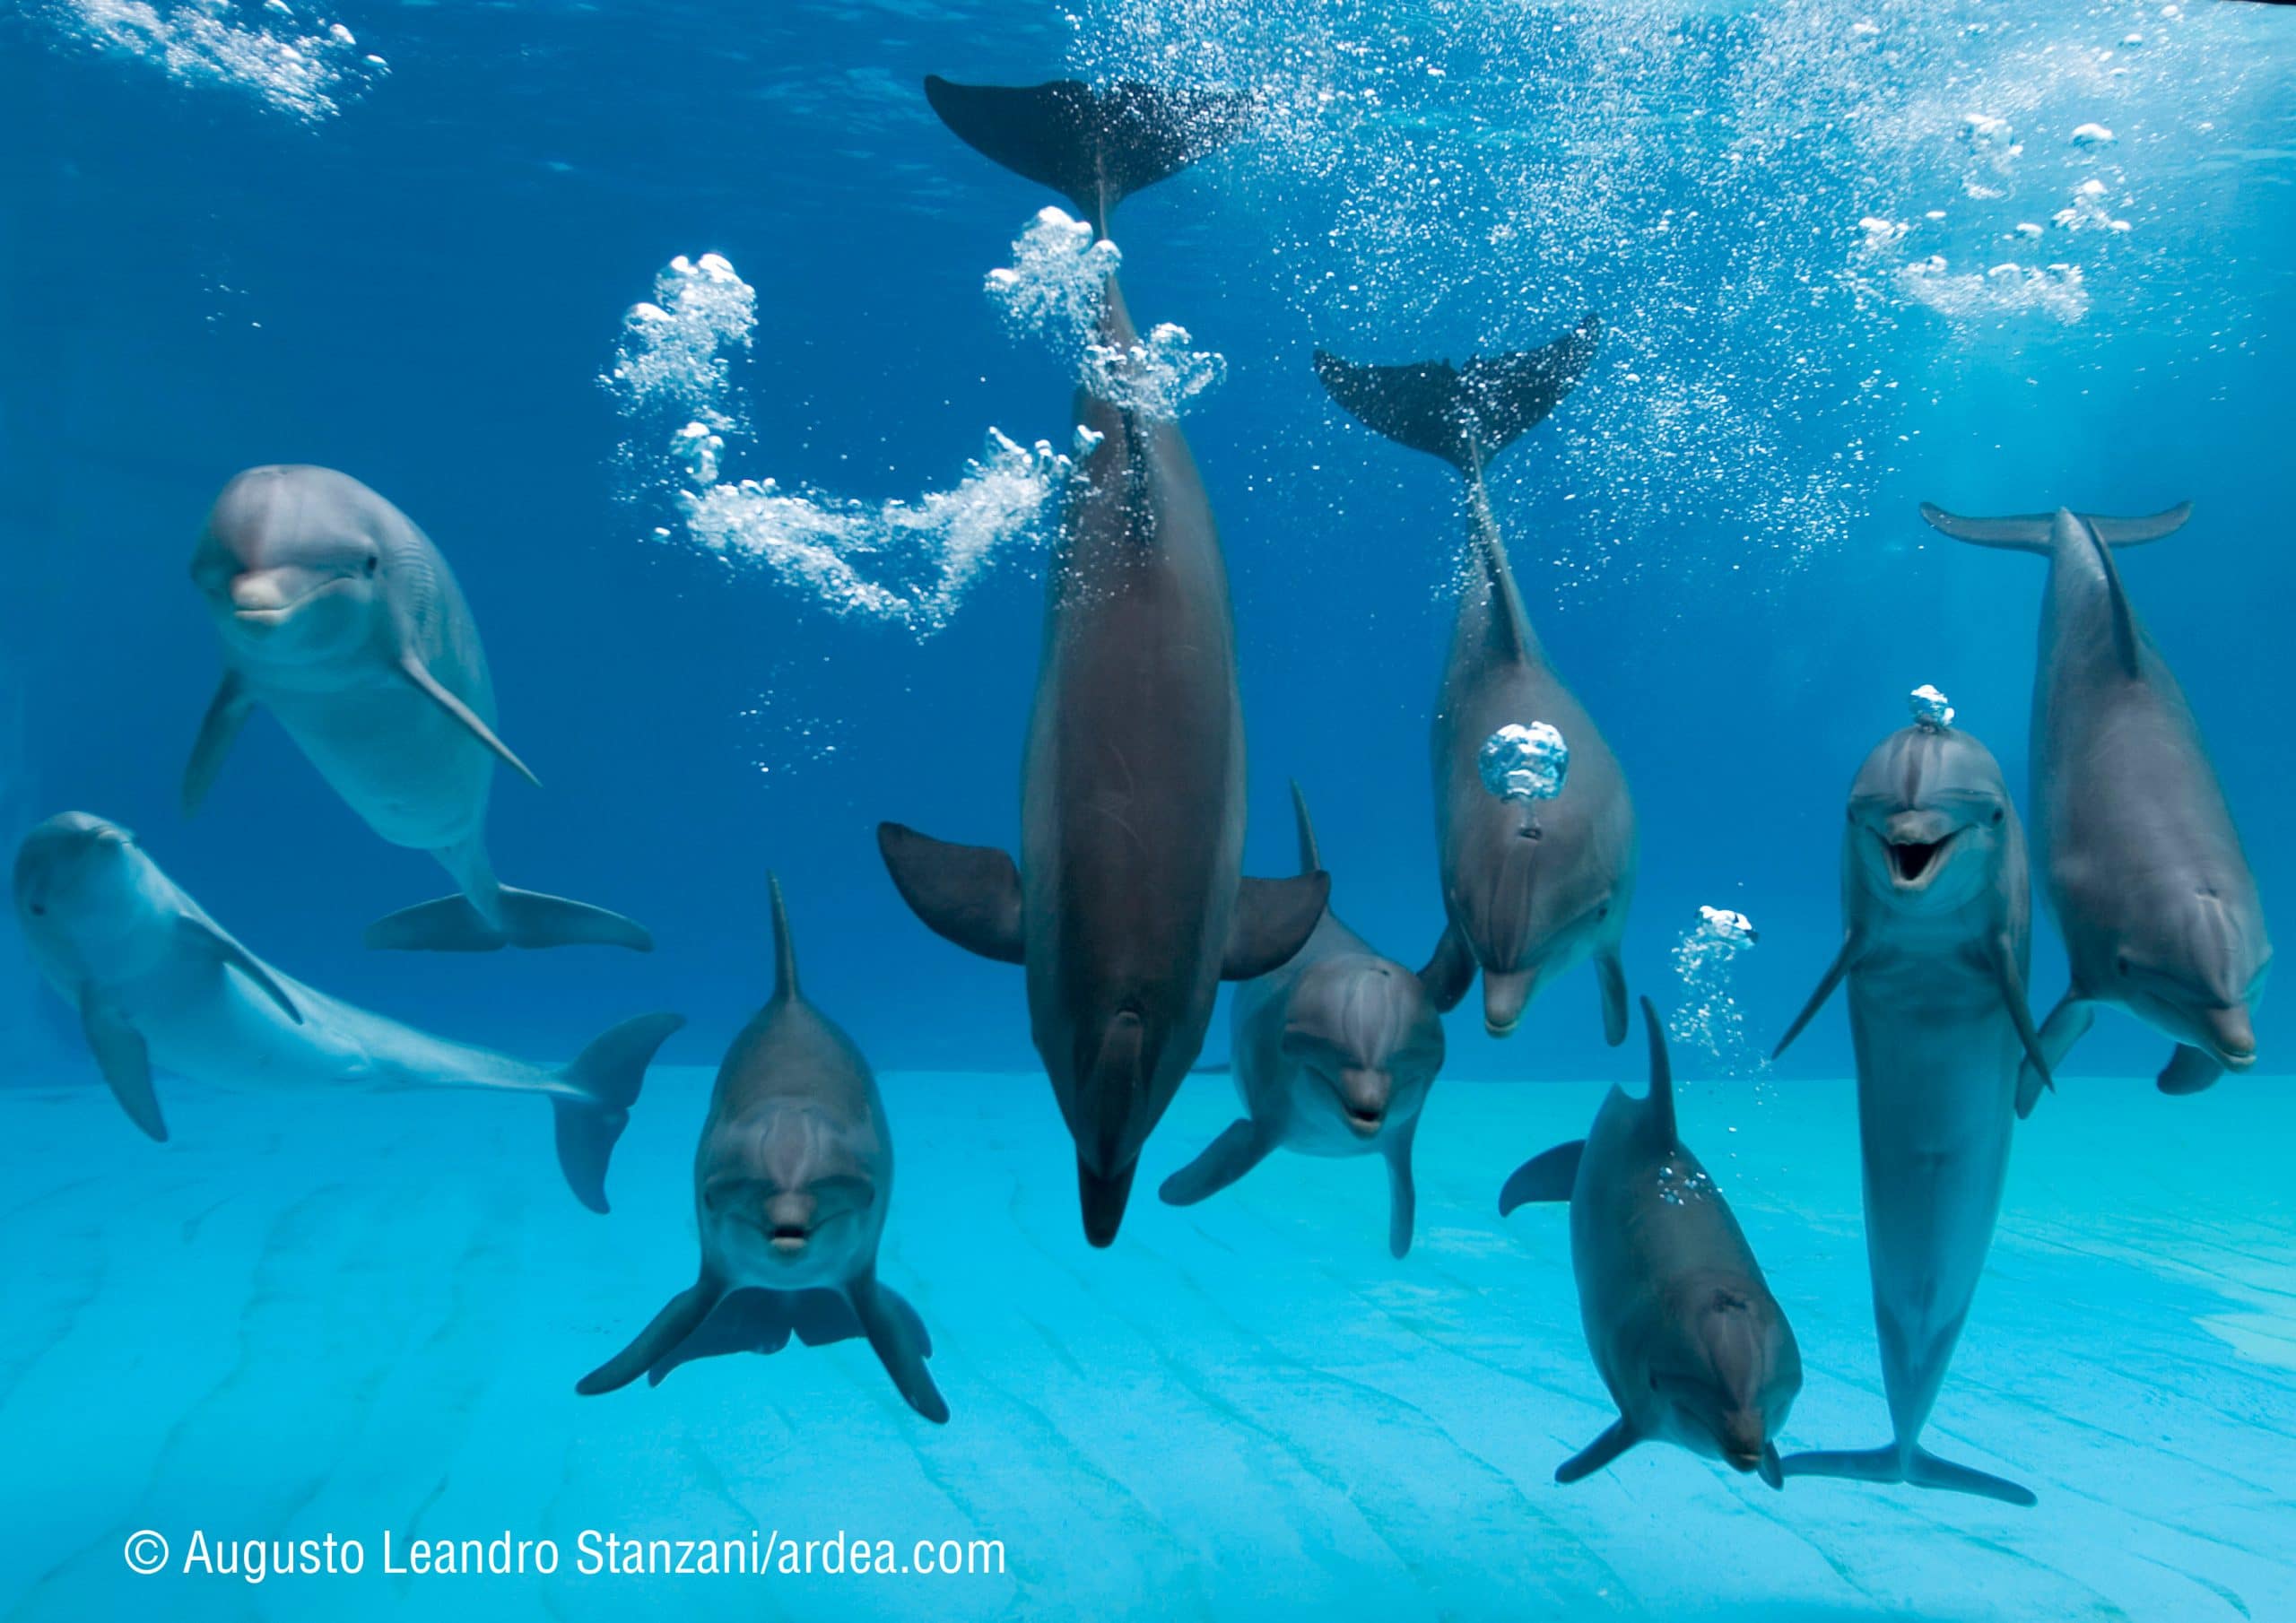 Das "Lächeln" täuscht: Die Lebensbedingungen für Delfine in Gefangenschaft sind nicht artgerecht, trostlos und grausam. Der freundliche Gesichtsausdruck der Delfine hat mit der Anatomie ihrer Kieferknochen zu tun, gibt jedoch keinen Einblick in die Gefühlswelt der Meeressäuger. 